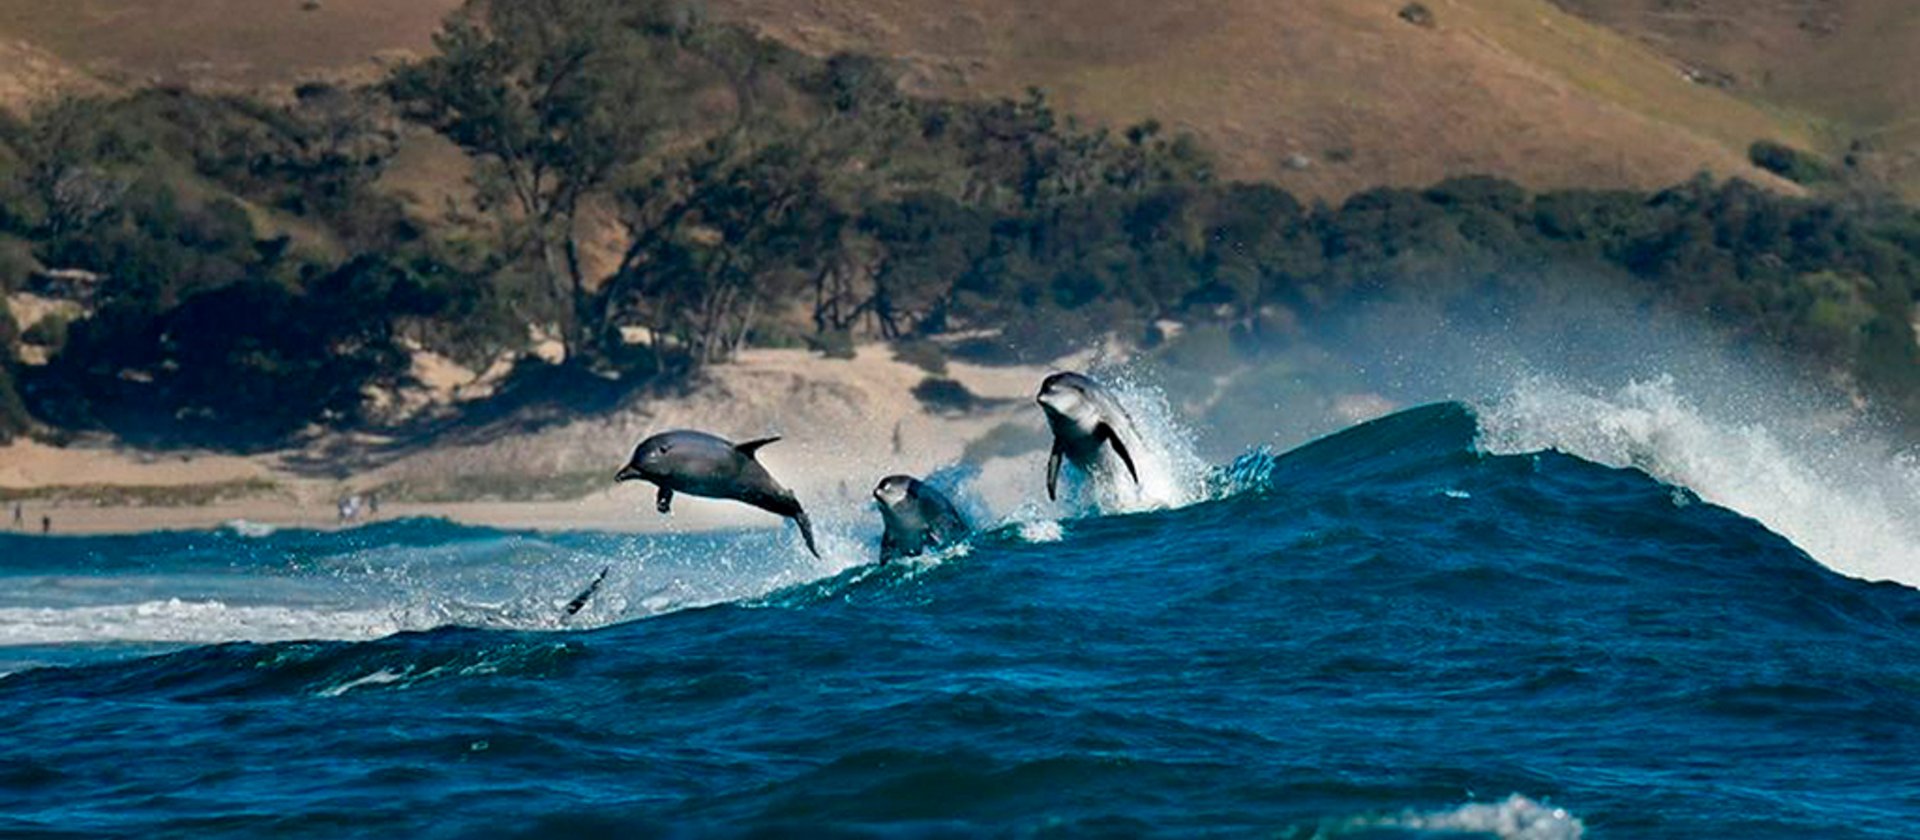 TSK Tauchreise in Südafrika Sardine Run Delphine springen aus Wasser